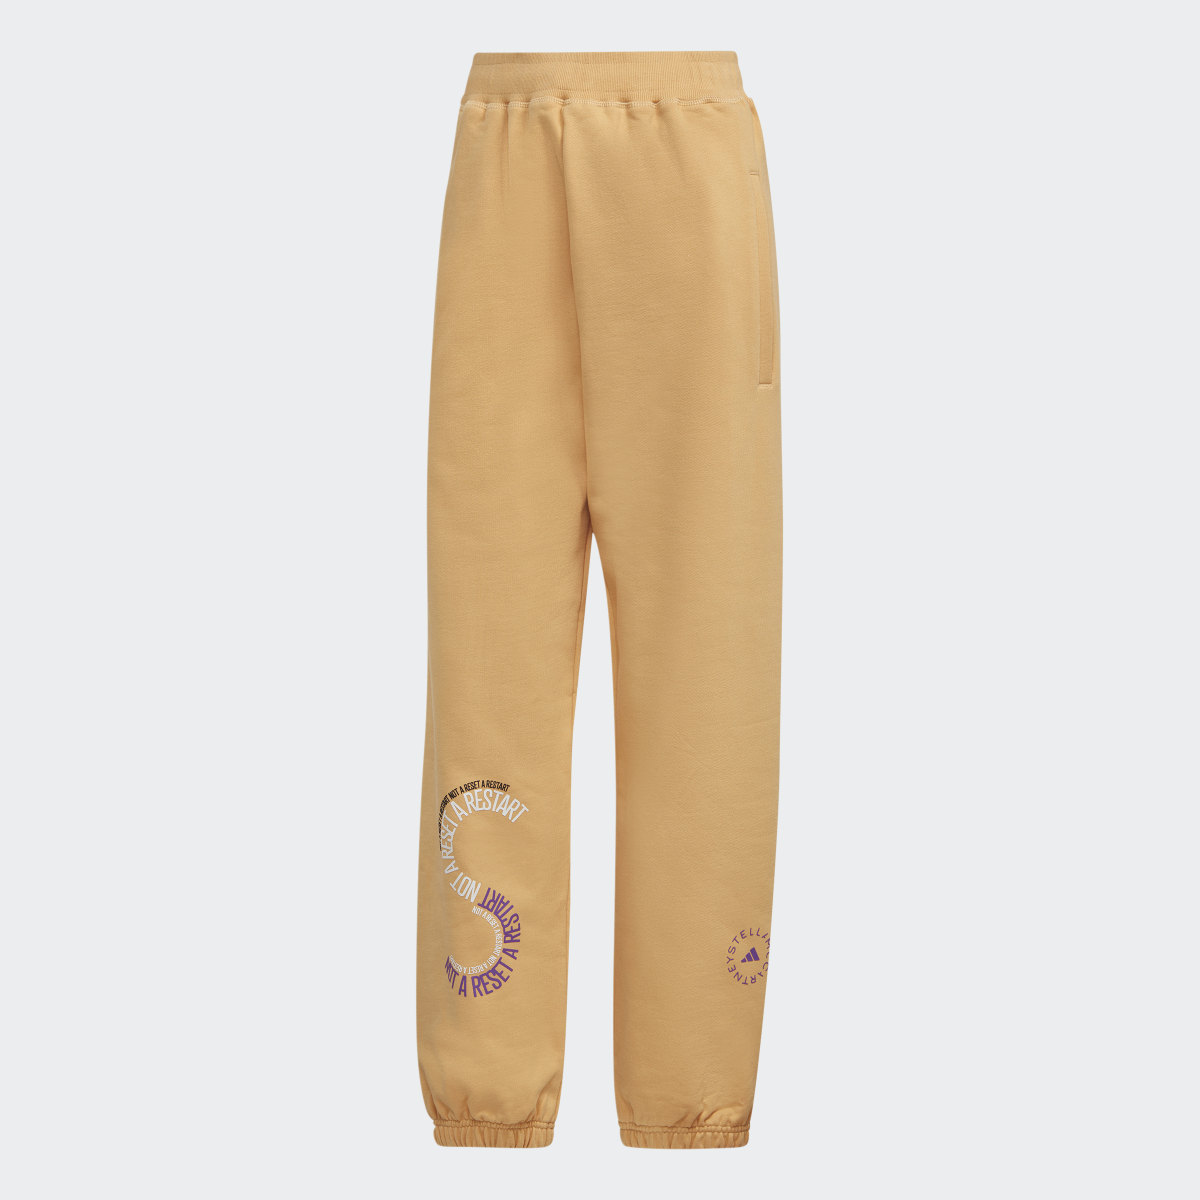 Adidas by Stella McCartney Sportswear Sweat Pants (GENDER NEUTRAL). 4